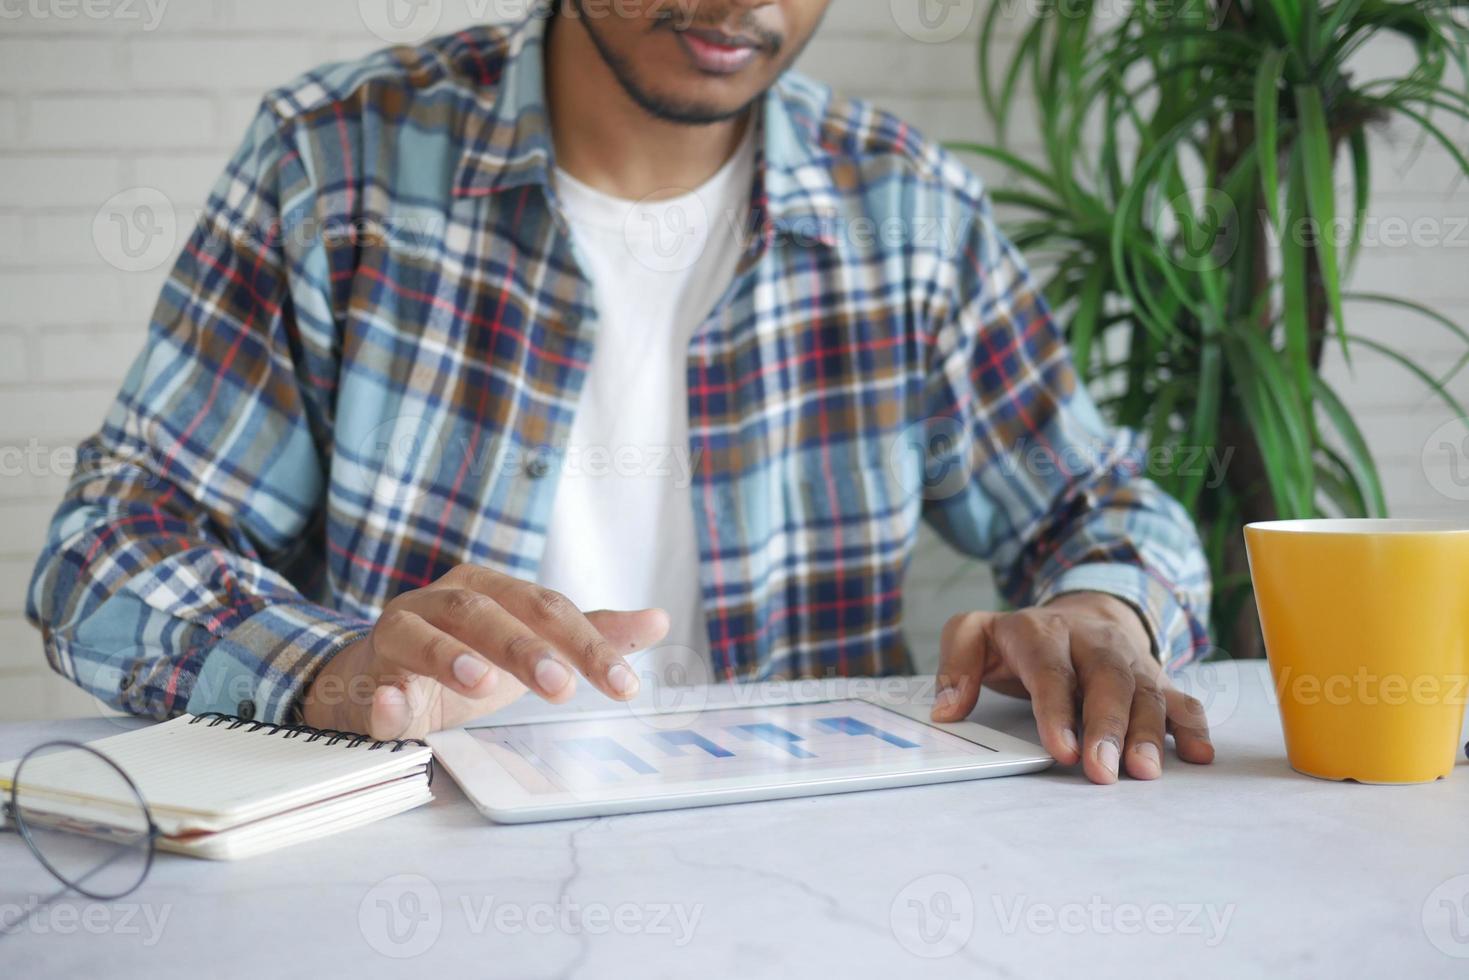 mão do jovem com caneta analisando o gráfico de barras em papel branco foto